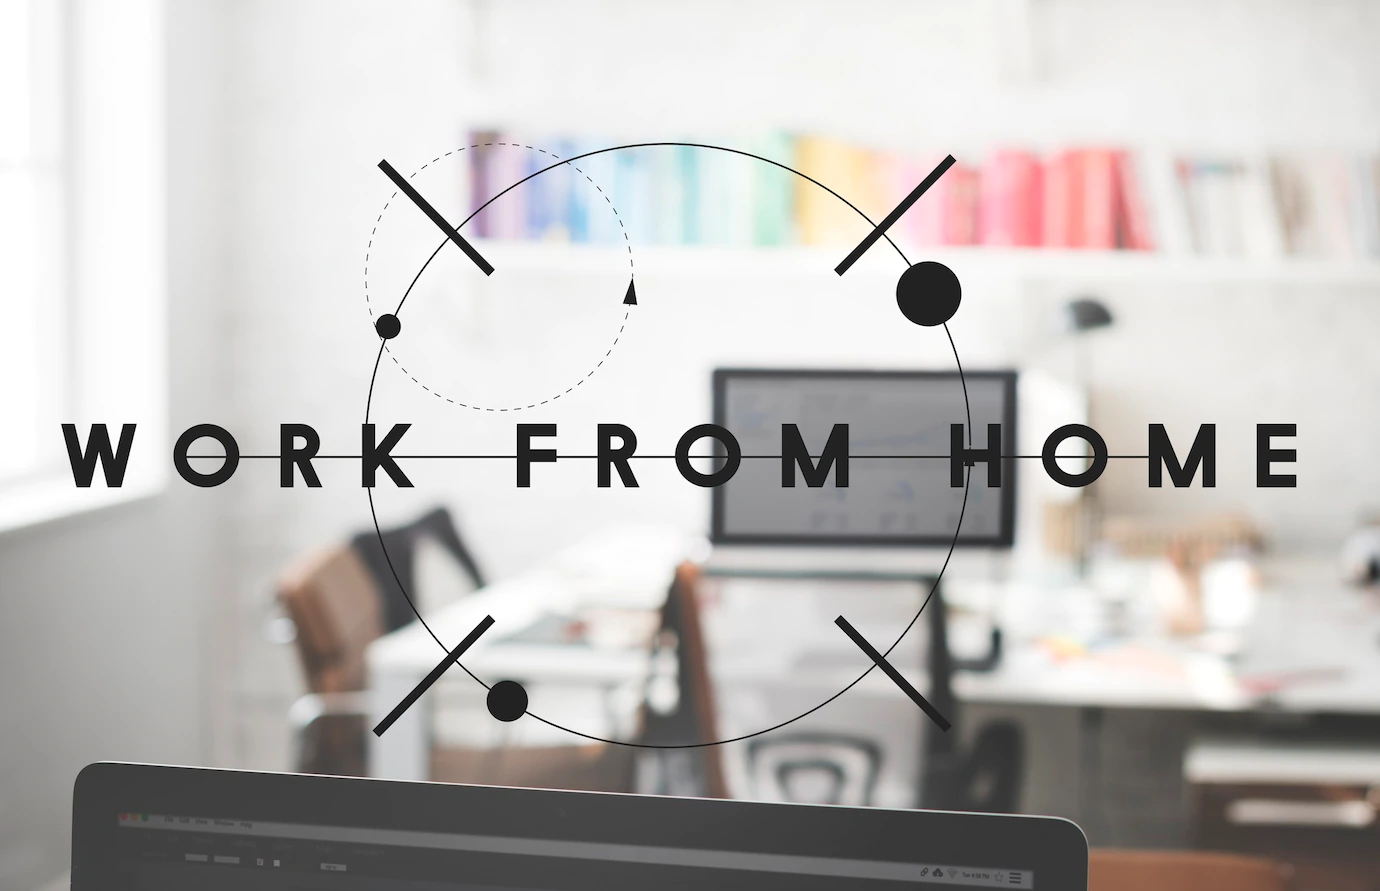 7 ทริคการจัดมุม Work From Home ให้มีบรรยากาศเหมาะกับการทำงาน